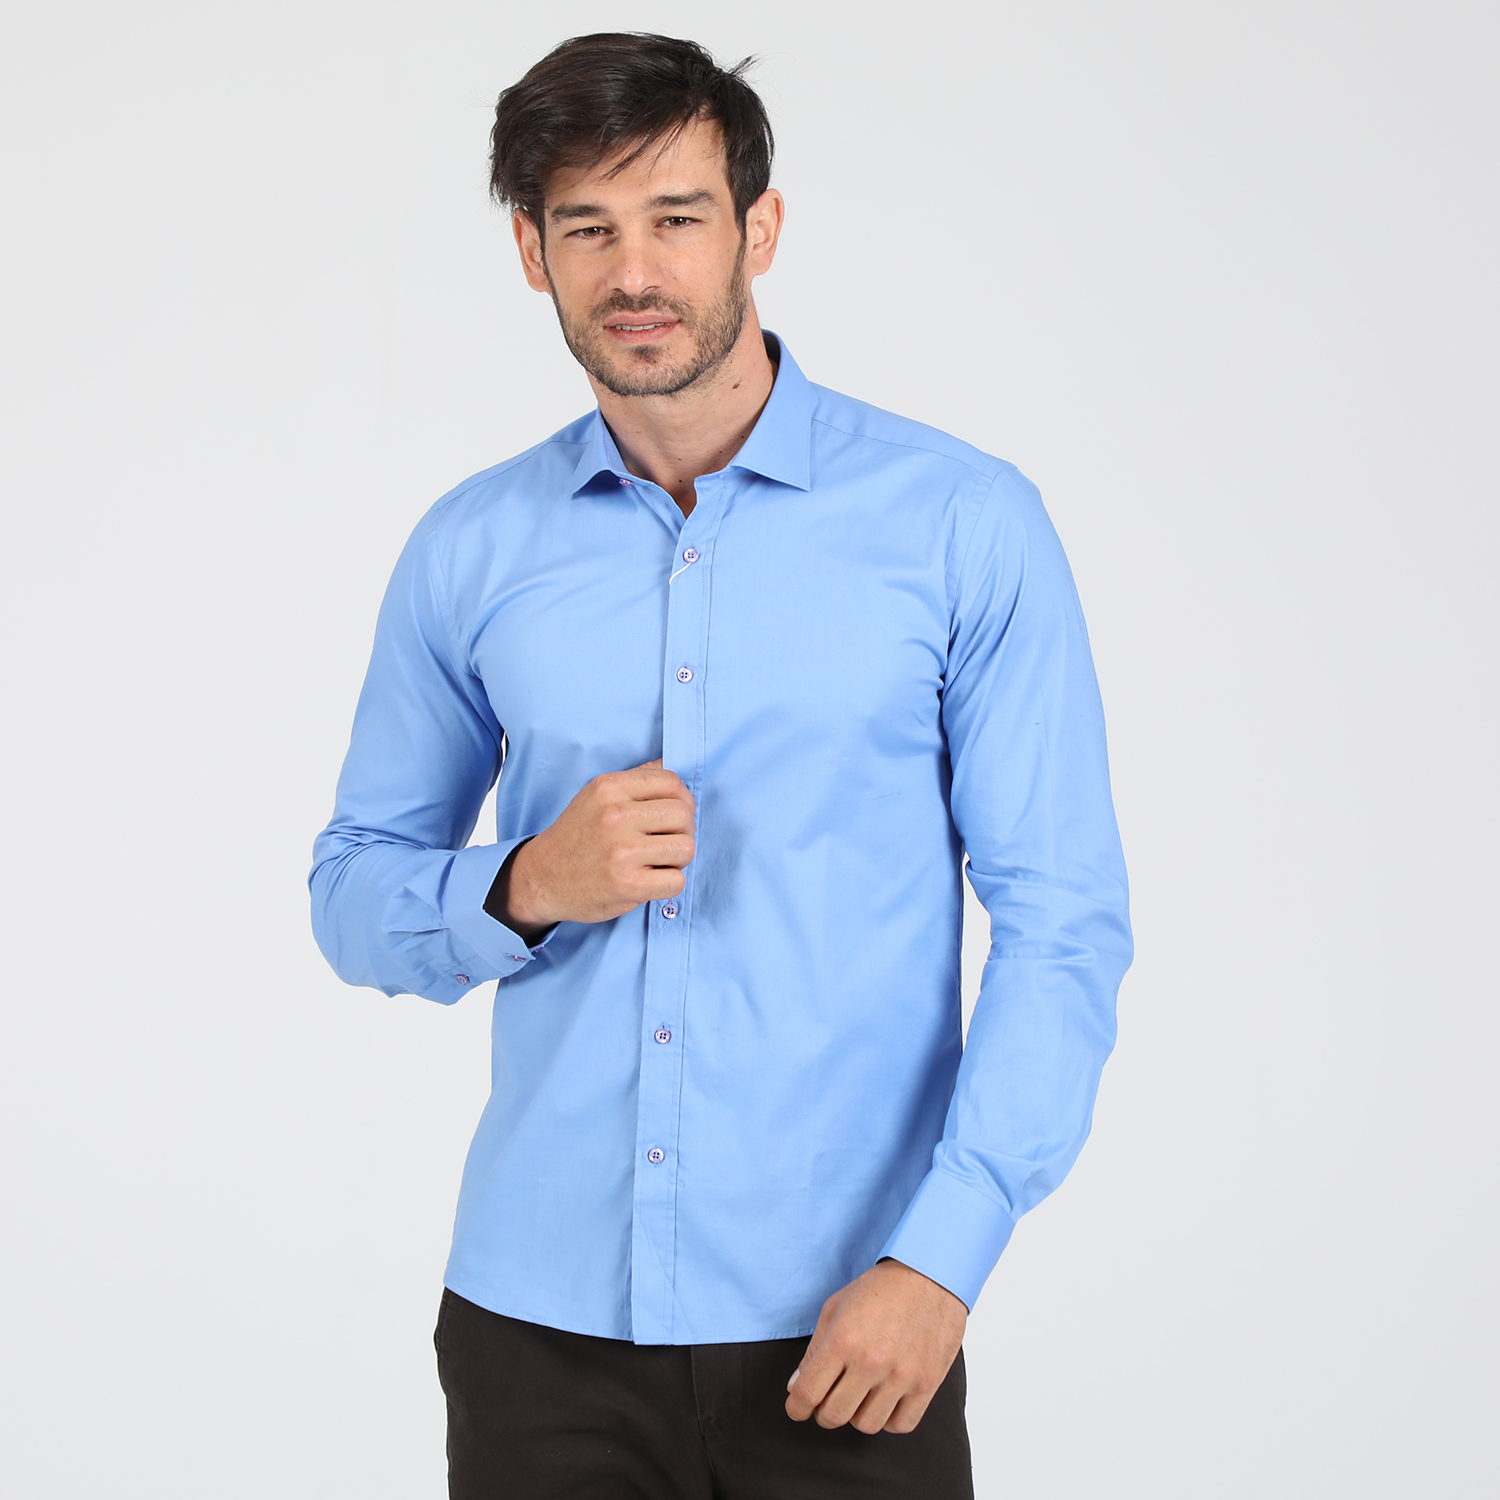 Ανδρικά/Ρούχα/Πουκάμισα/Μακρυμάνικα MARTIN & CO - Ανδρικό πουκάμισο MARTIN & CO SLIM FIT μπλε